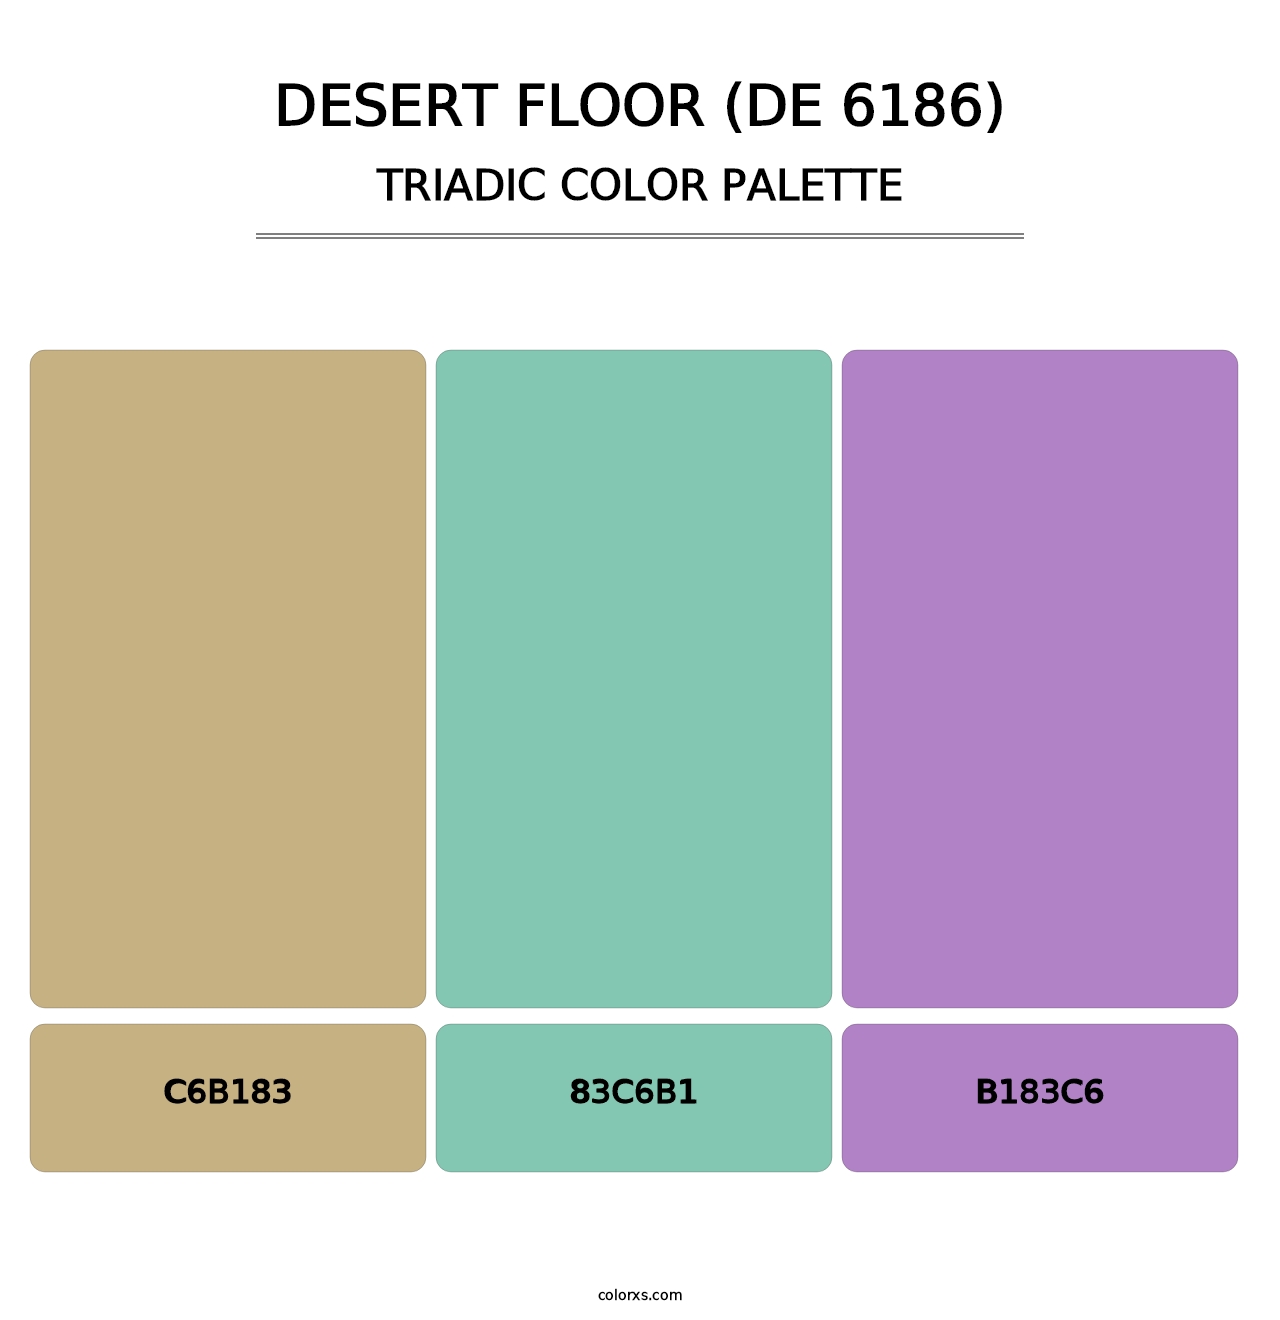 Desert Floor (DE 6186) - Triadic Color Palette